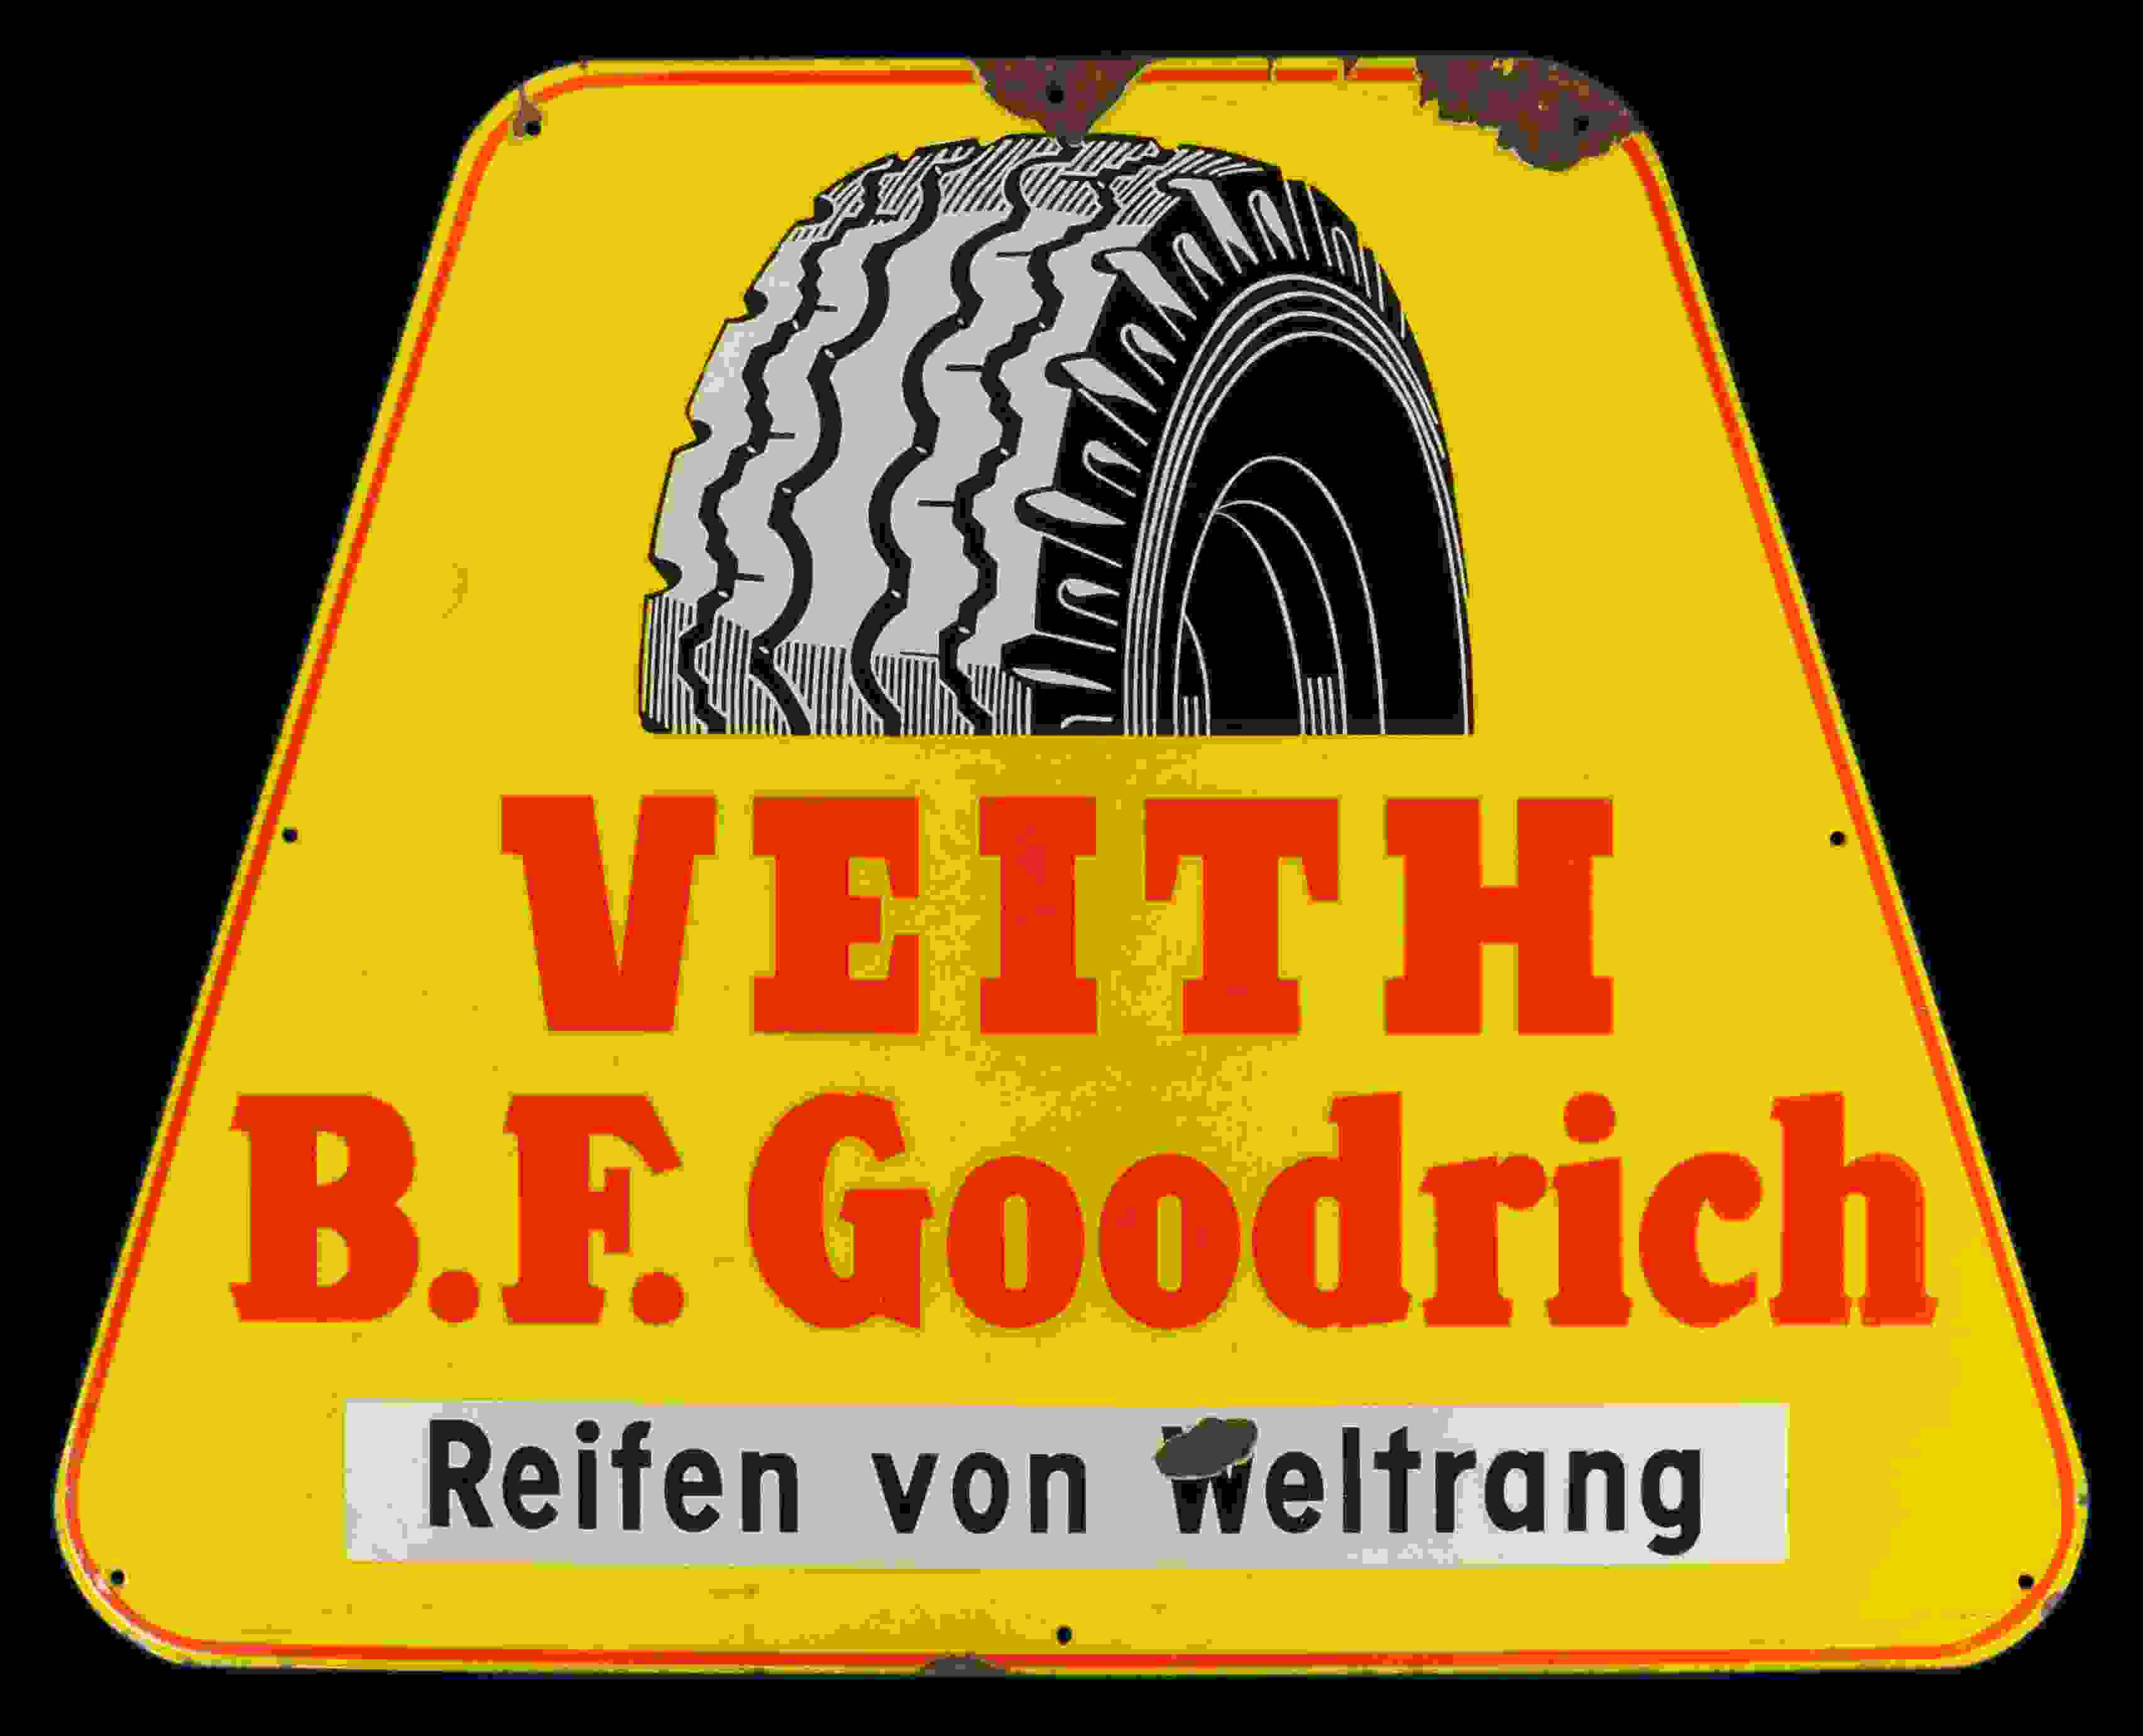 Veith B.F. Goodrich Reifen 